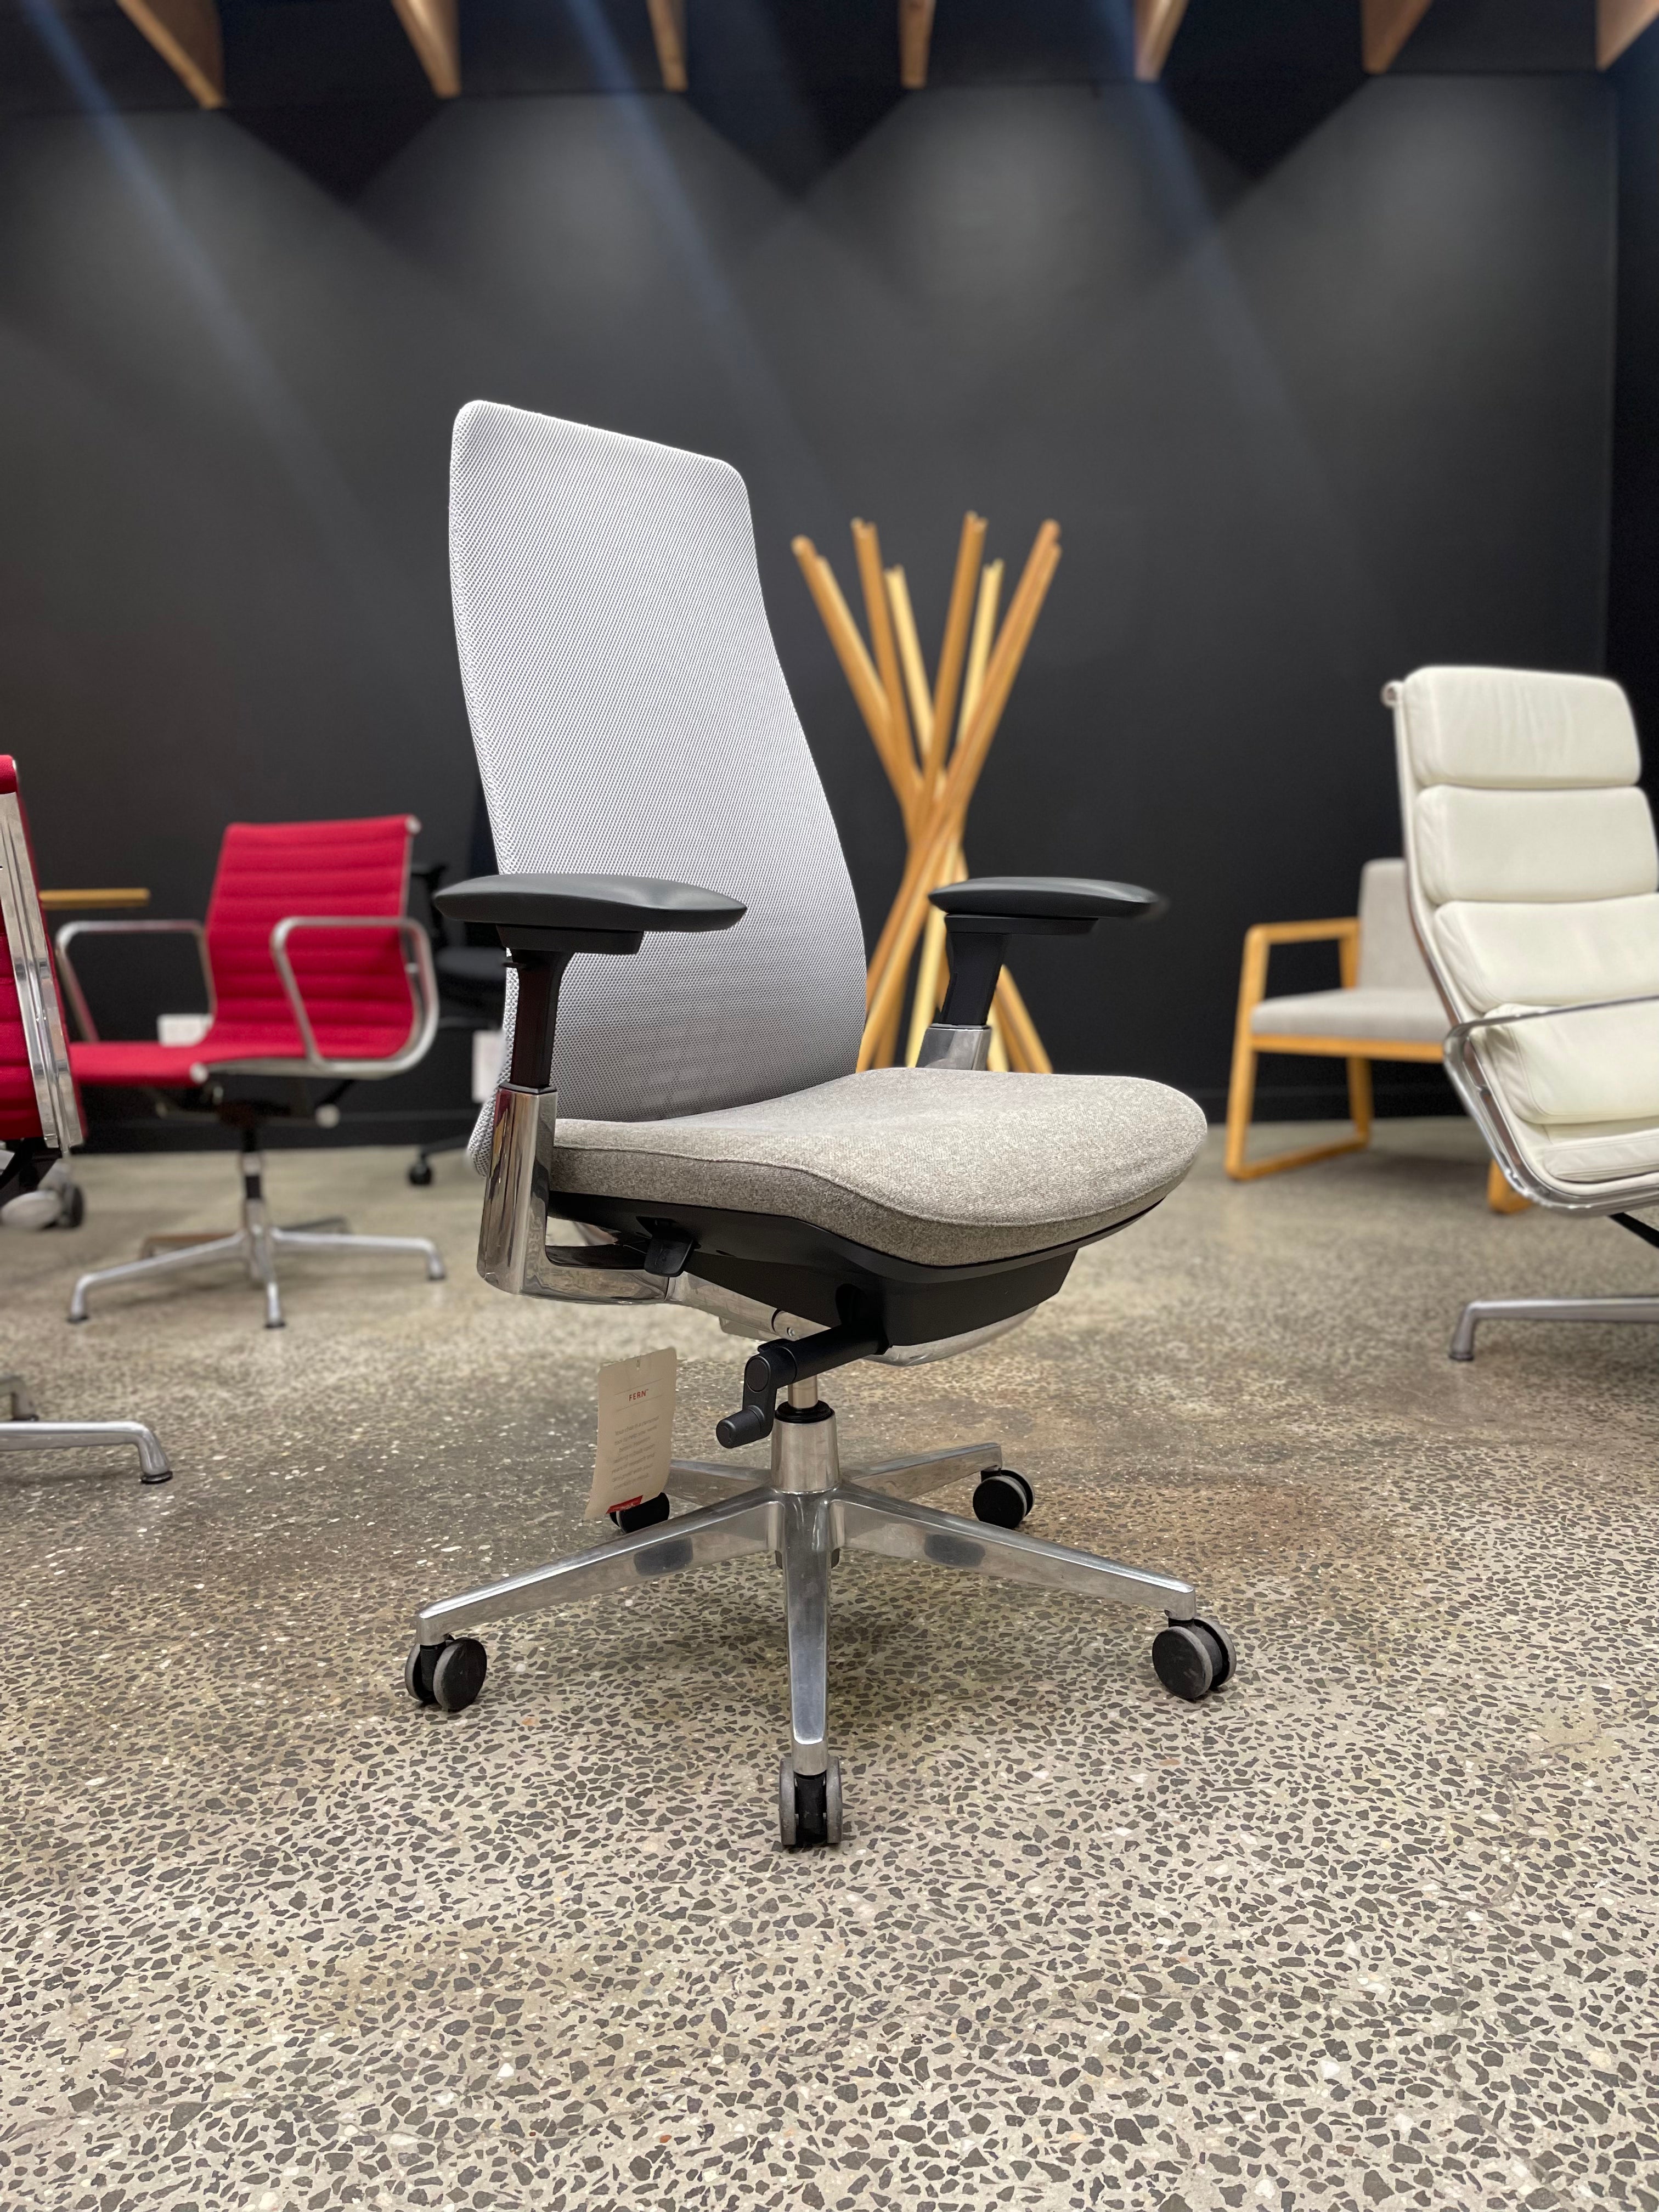 Haworth FERN Ergonomic Chair w/ Danish KVADRAT Wool Seat